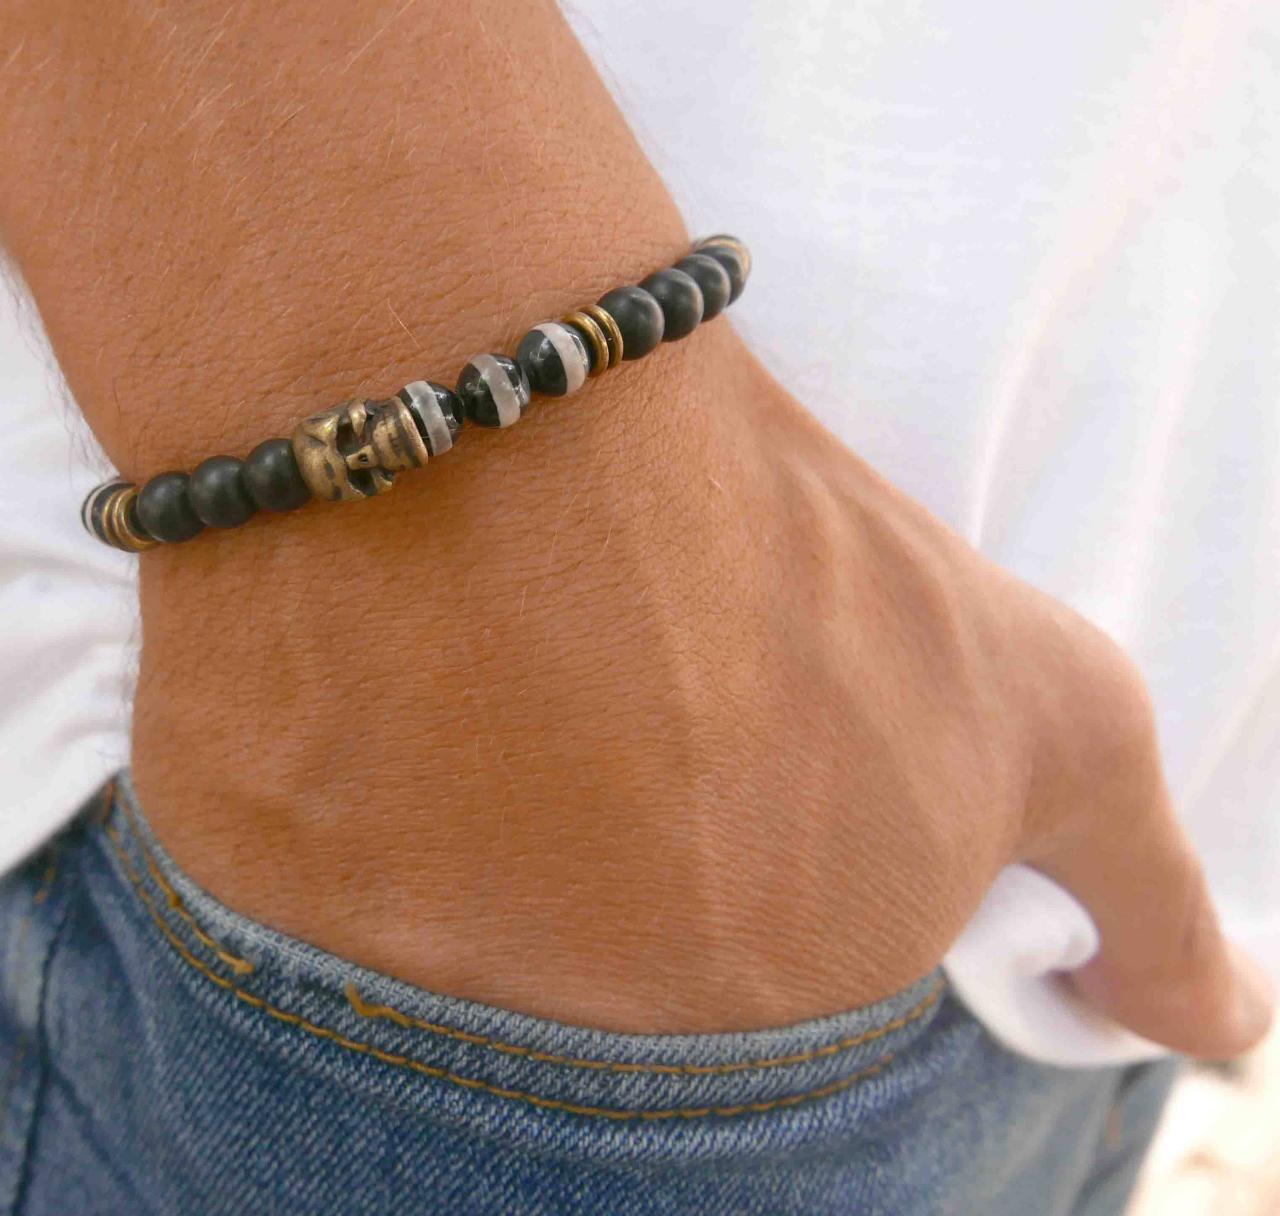 Men's Bracelet - Men's Beaded Bracelet - Men's Gemstone Bracelet - Mens Jewelry - Men's Gift - Husband Gift -